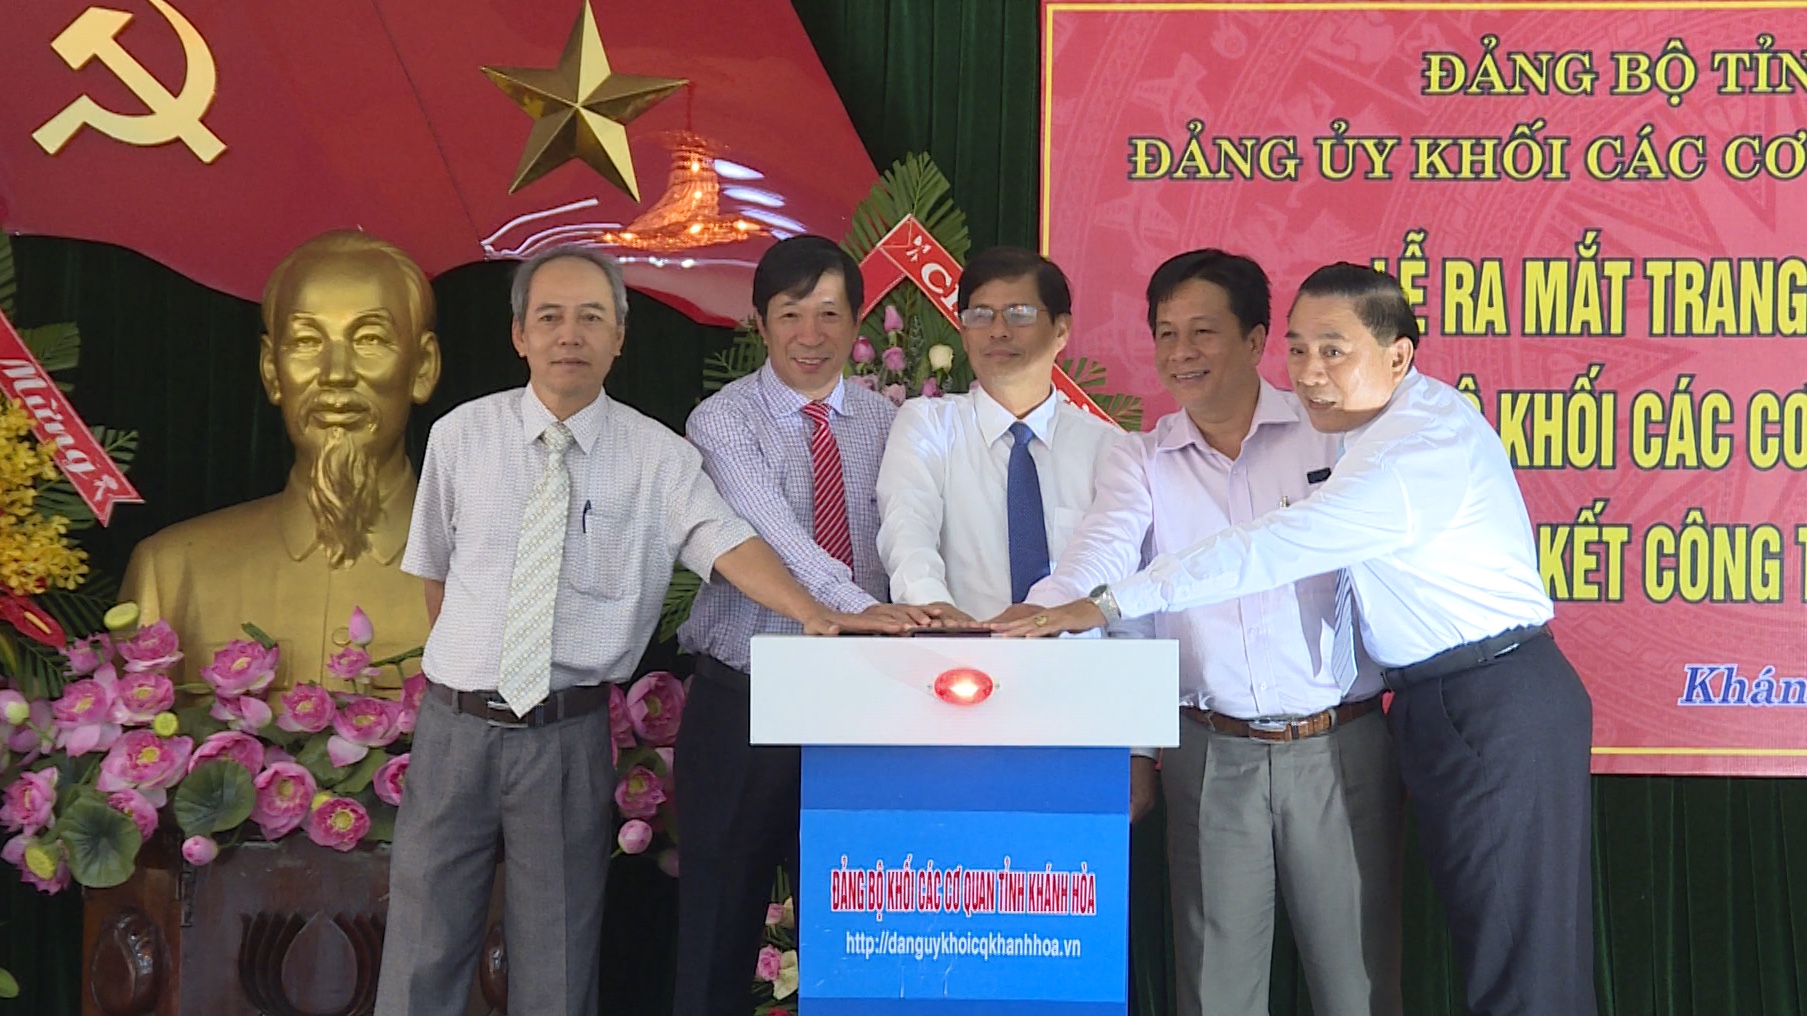 Các đại biểu bấm nút ra mắt Trang thông tin điện tử Đảng ủy Khối các cơ quan tỉnh.